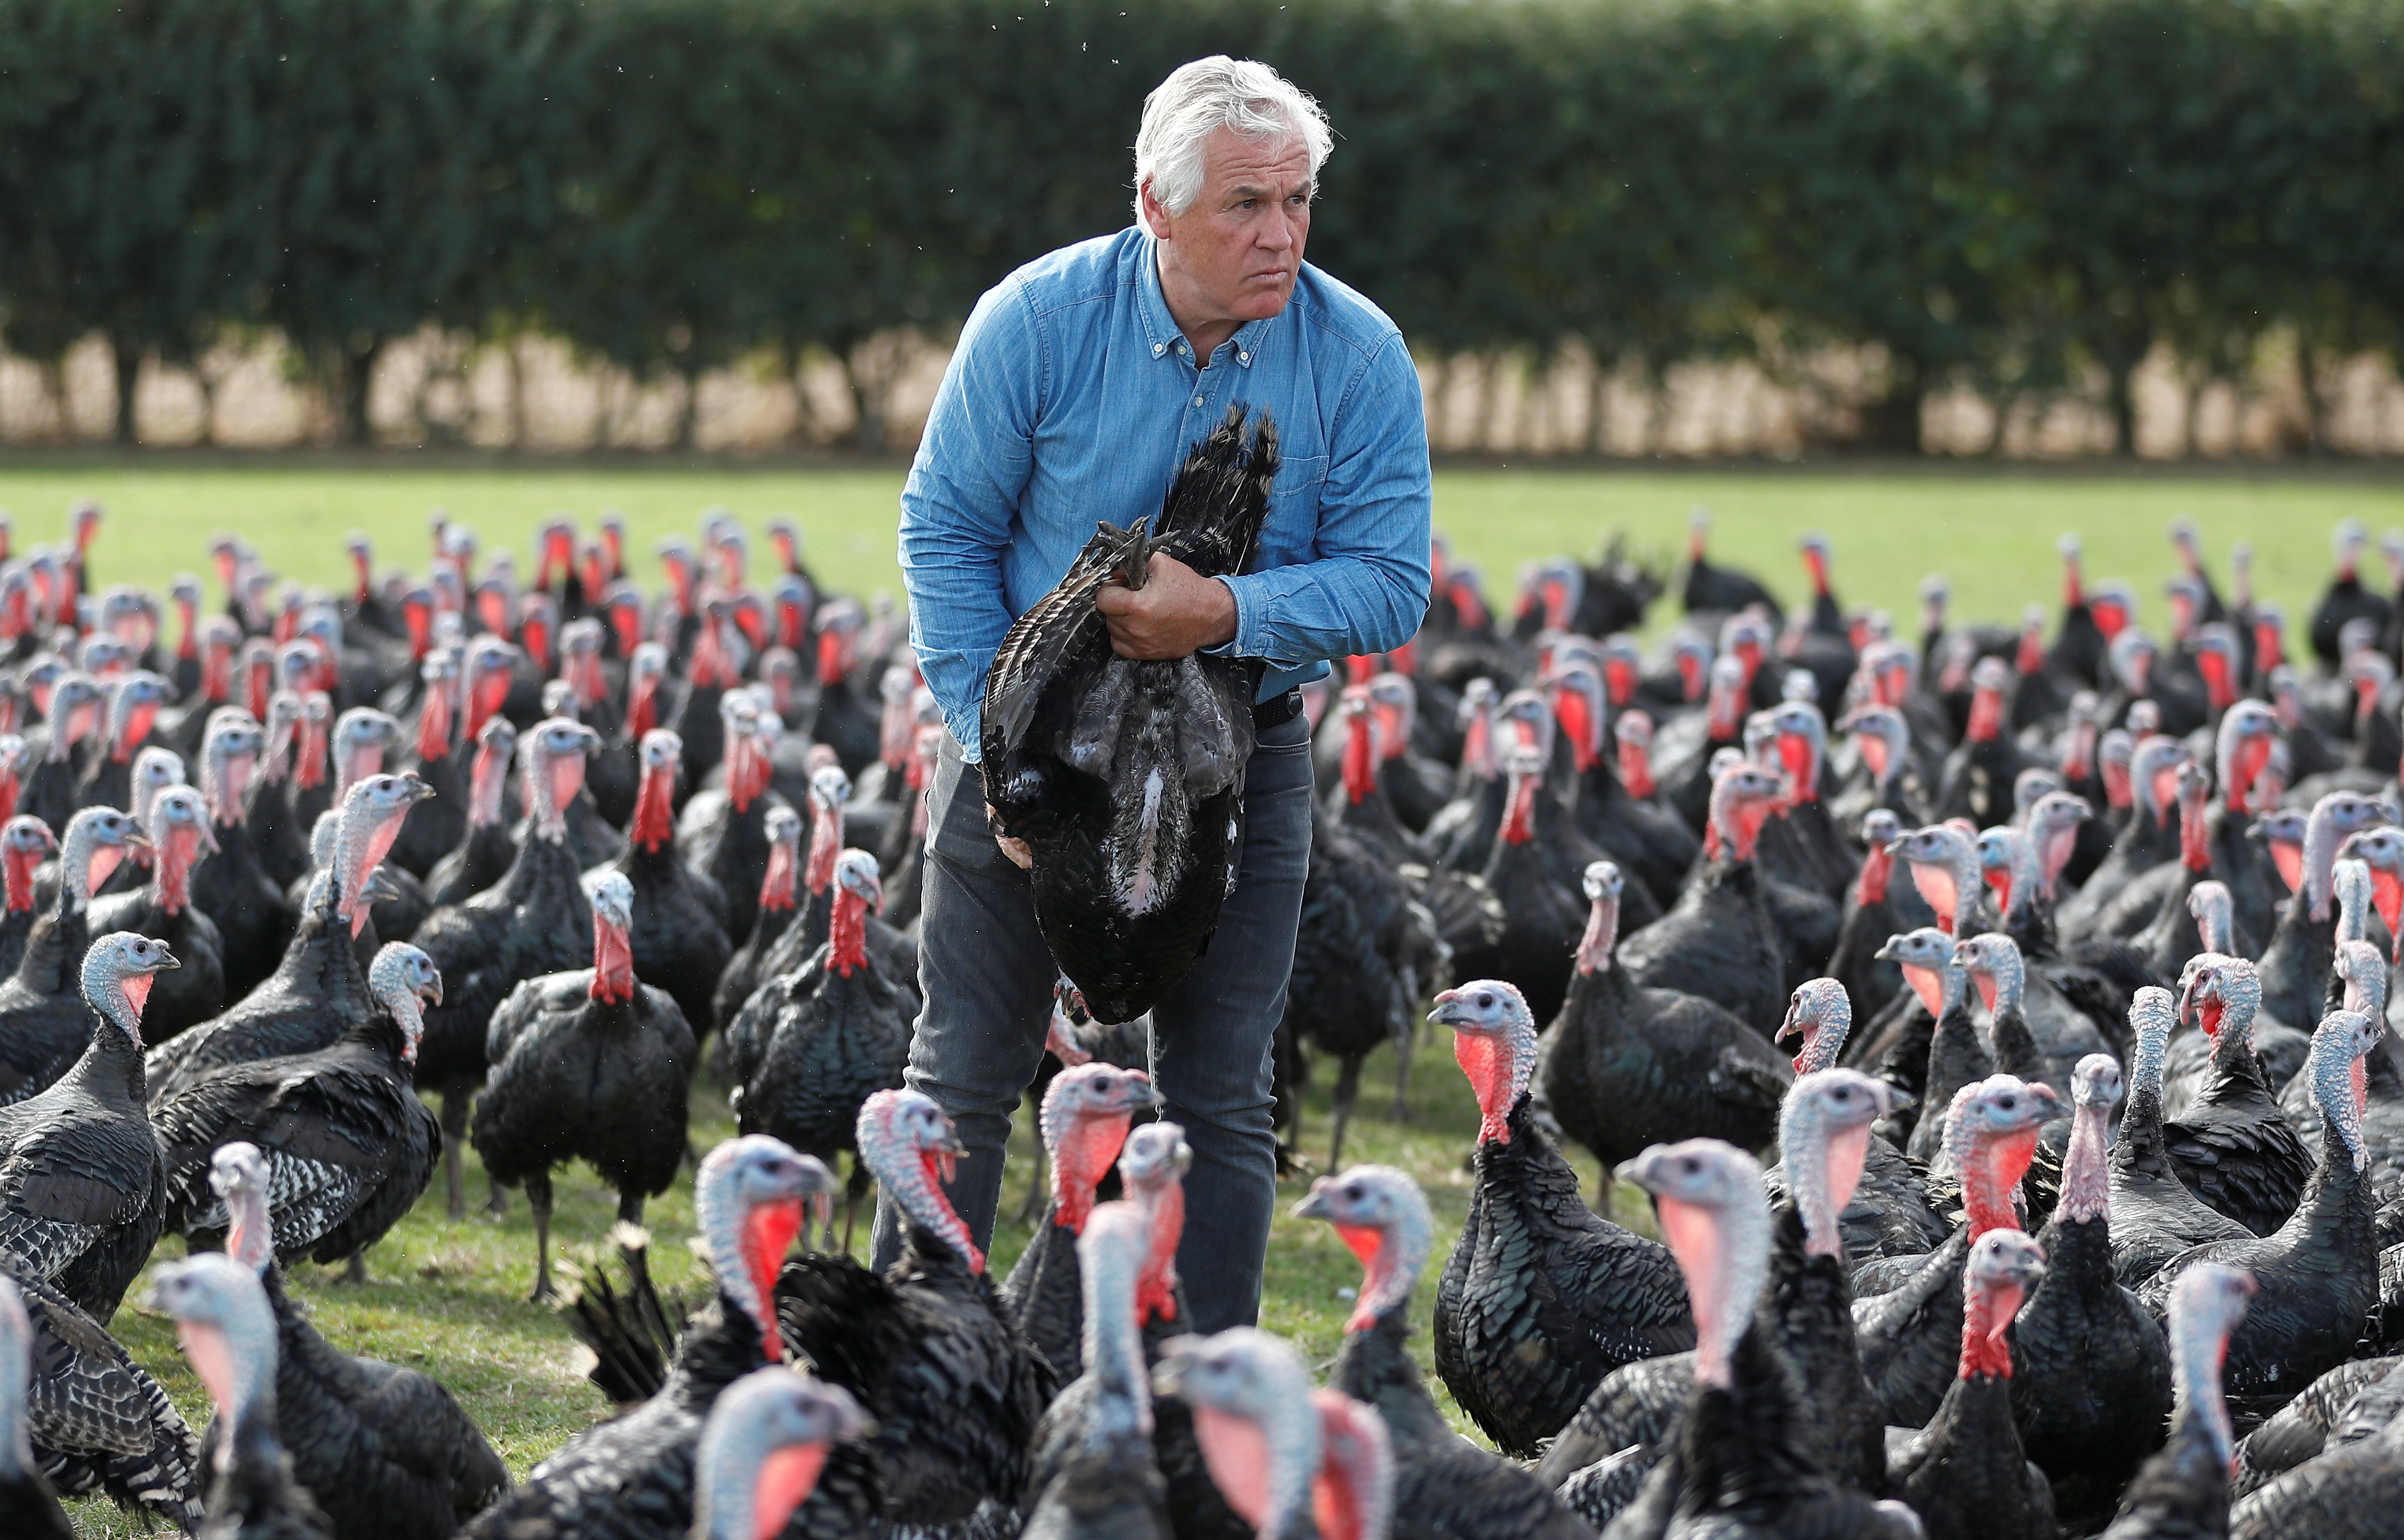 Turkey farmer Paul Kelly inspects turkeys on his farm in Chelmsford